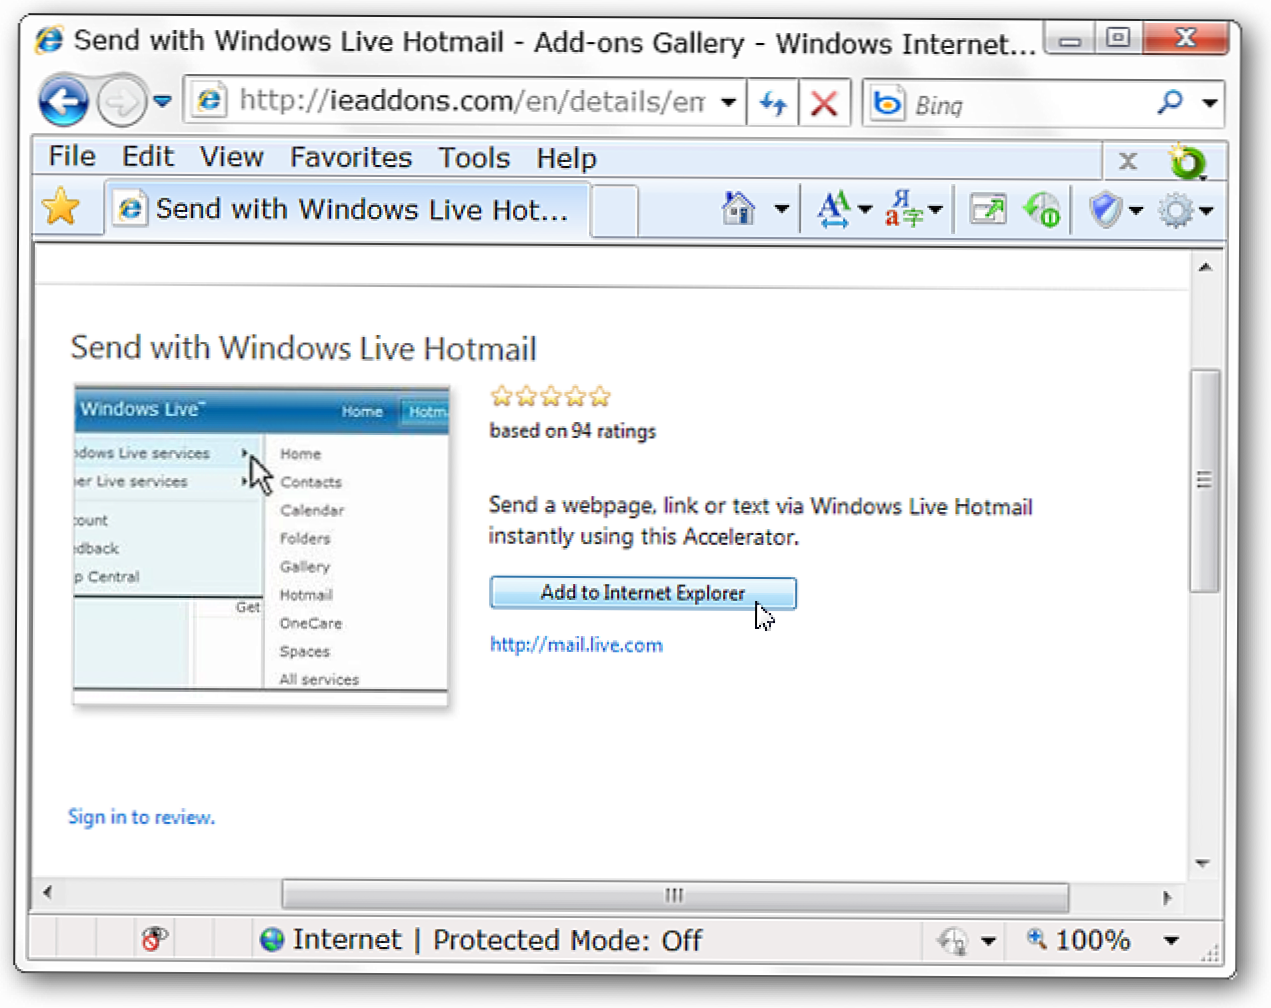 Lähetä teksti ja linkit Windows Live Hotmailin kautta IE 8: ssa (Miten)